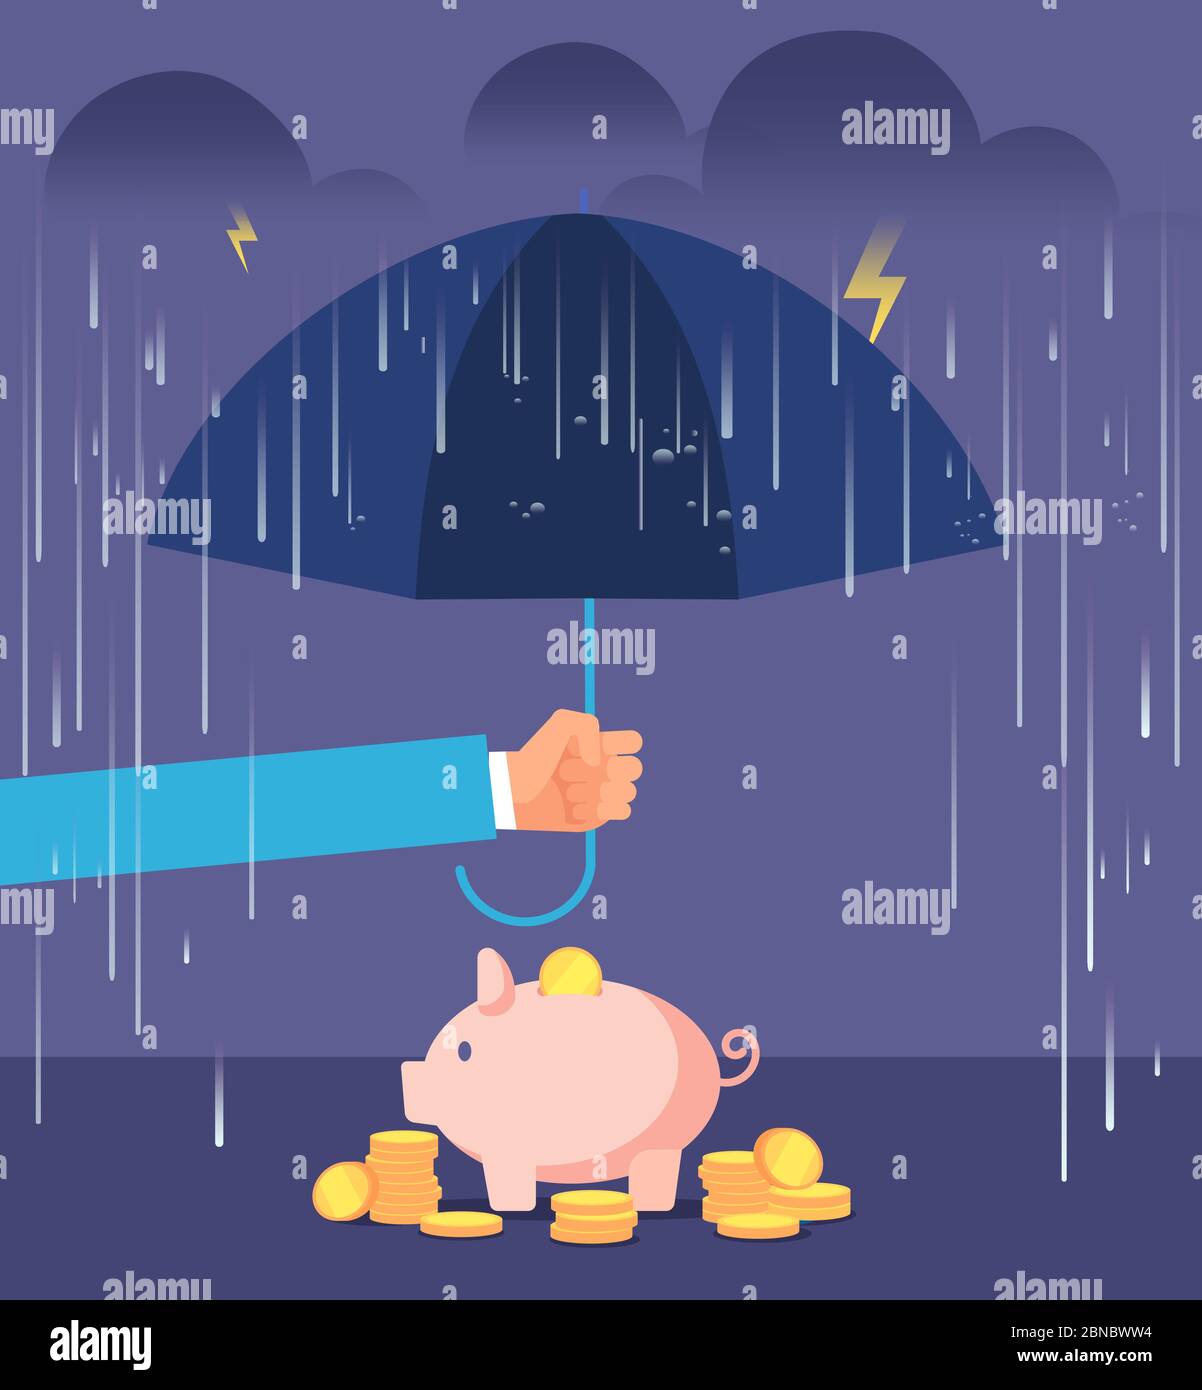 Konzept des Pfandschutzes. Hand mit Regenschirm schützt Sparschwein vor Regen und Sturm. Hinterlegung Versicherung Vektor Geschäft Hintergrund. Schutz Finanzen Geld, Bankgeschäft schützen Abbildung Stock Vektor